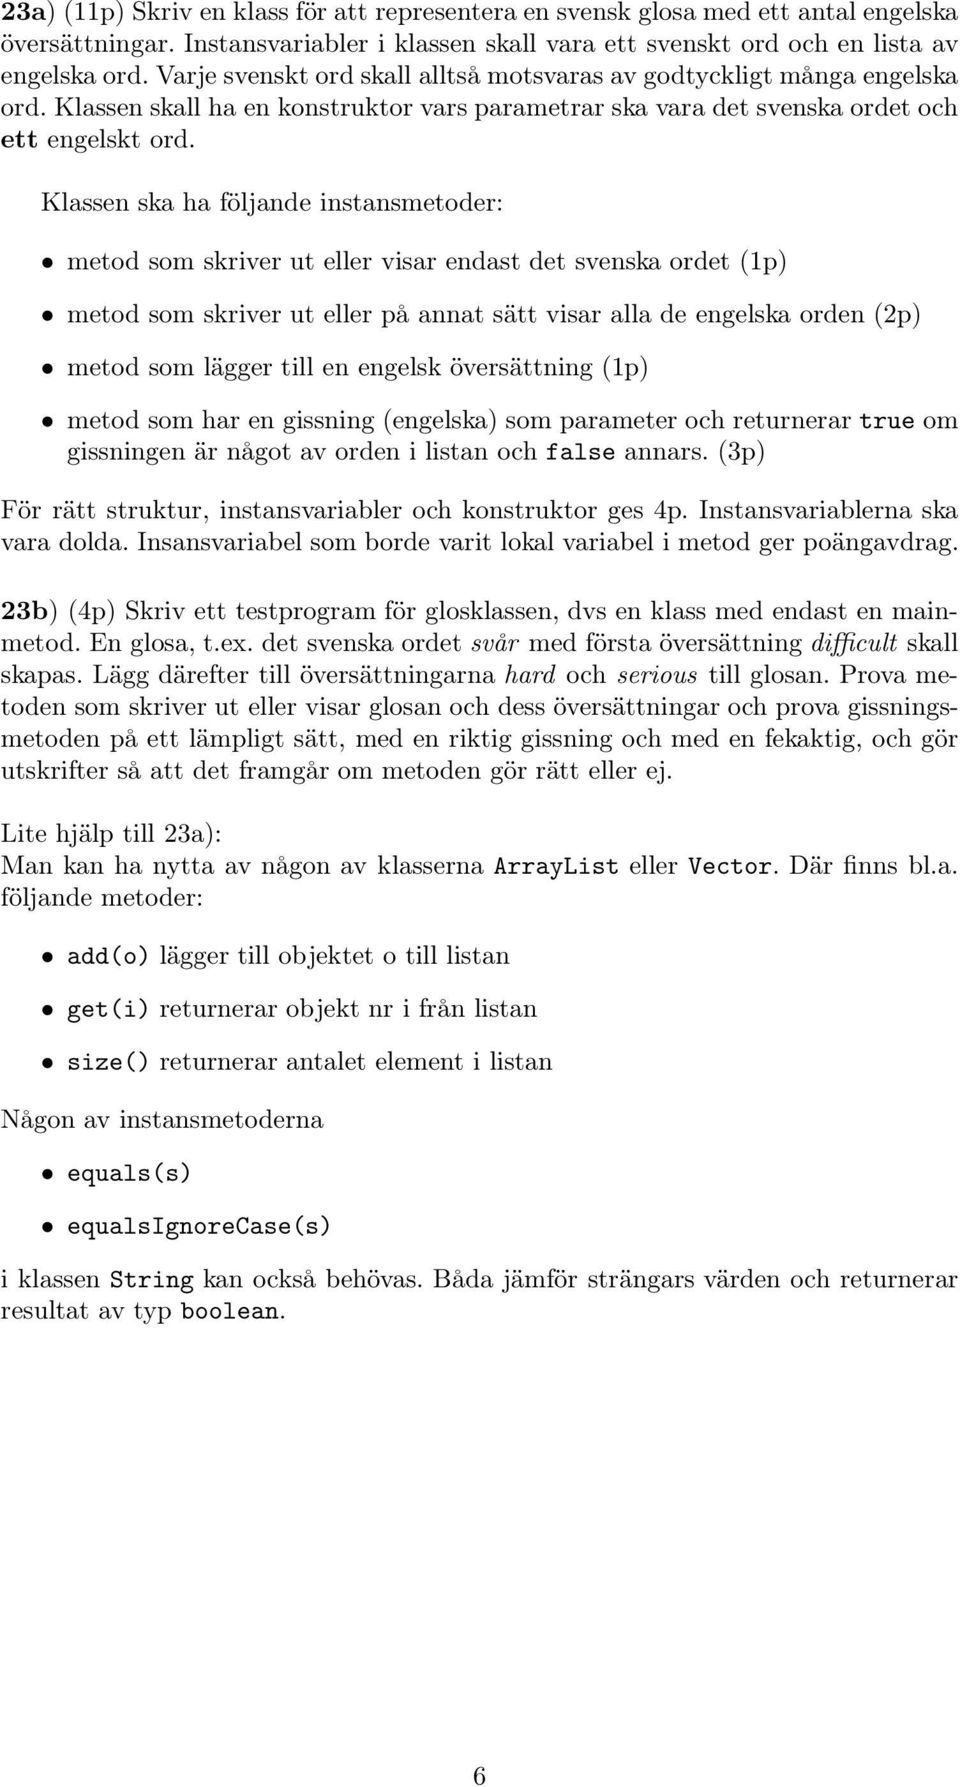 Klassen ska ha följande instansmetoder: metod som skriver ut eller visar endast det svenska ordet (1p) metod som skriver ut eller på annat sätt visar alla de engelska orden (2p) metod som lägger till